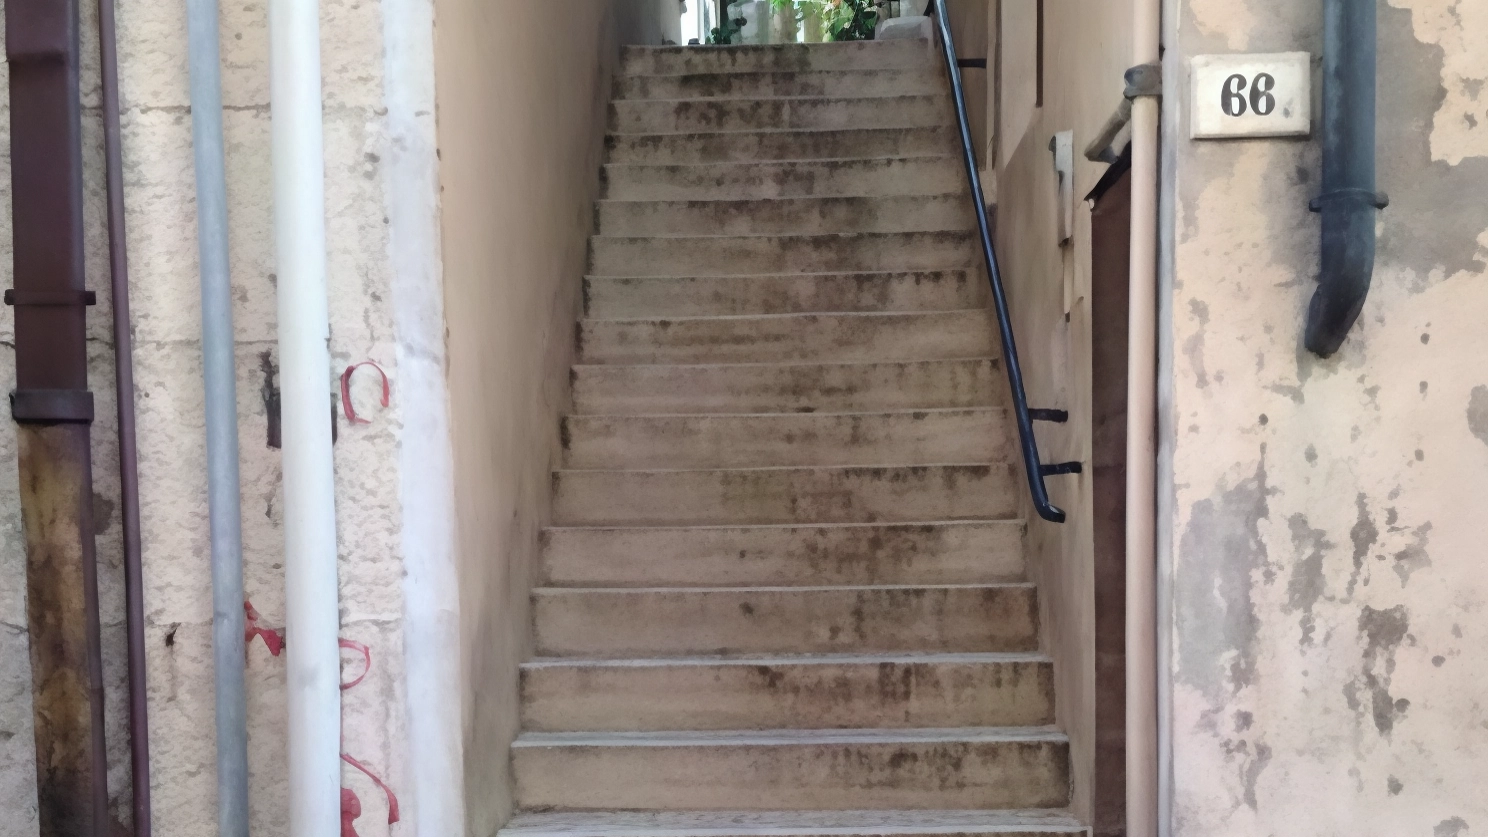 Via Birarelli, ecco la scalinata che godrà di nuova luce. Il cantiere è ormai concluso